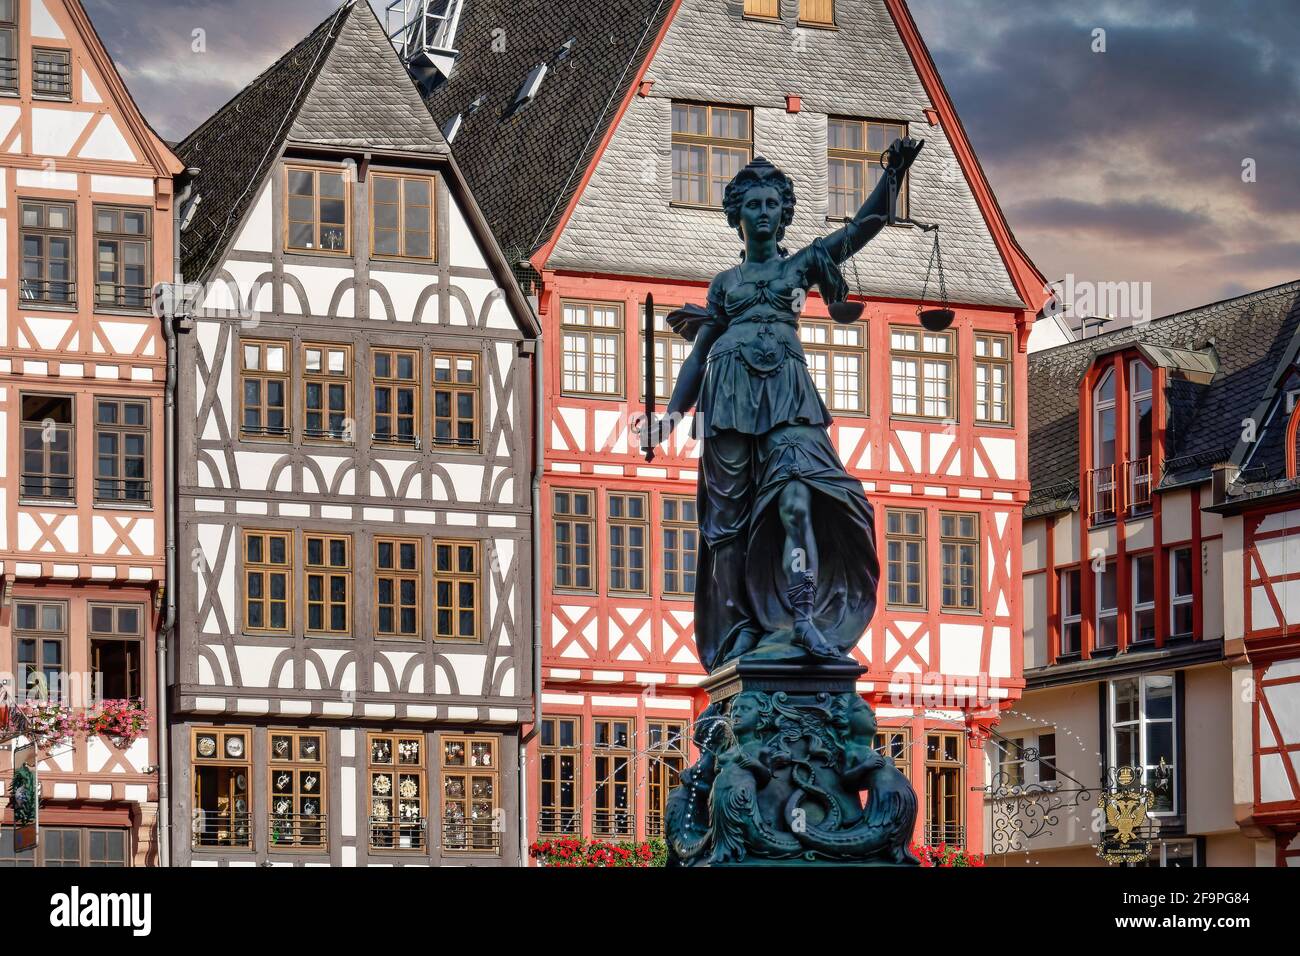 Gerechtigkeitsbrunnen , Justizia, Römerberg, Altstadt, Fachwerkhäuser,  Frankfurt am Main, Hessen, Deutschland, Europa Stock Photo